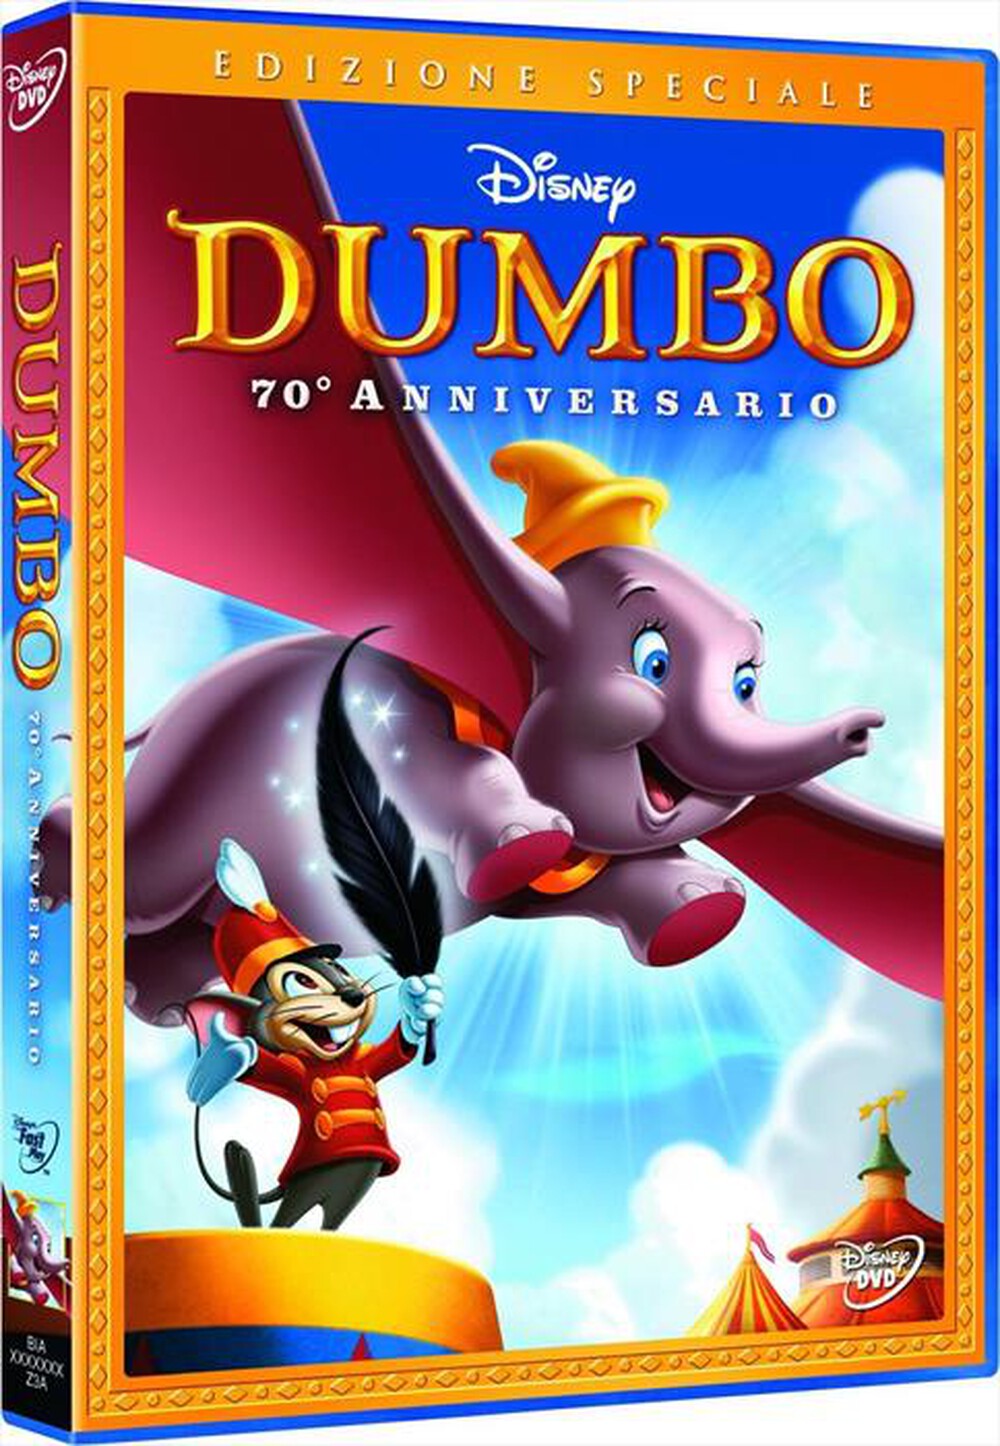 "WALT DISNEY - Dumbo (SE) (70o Anniversario) - "